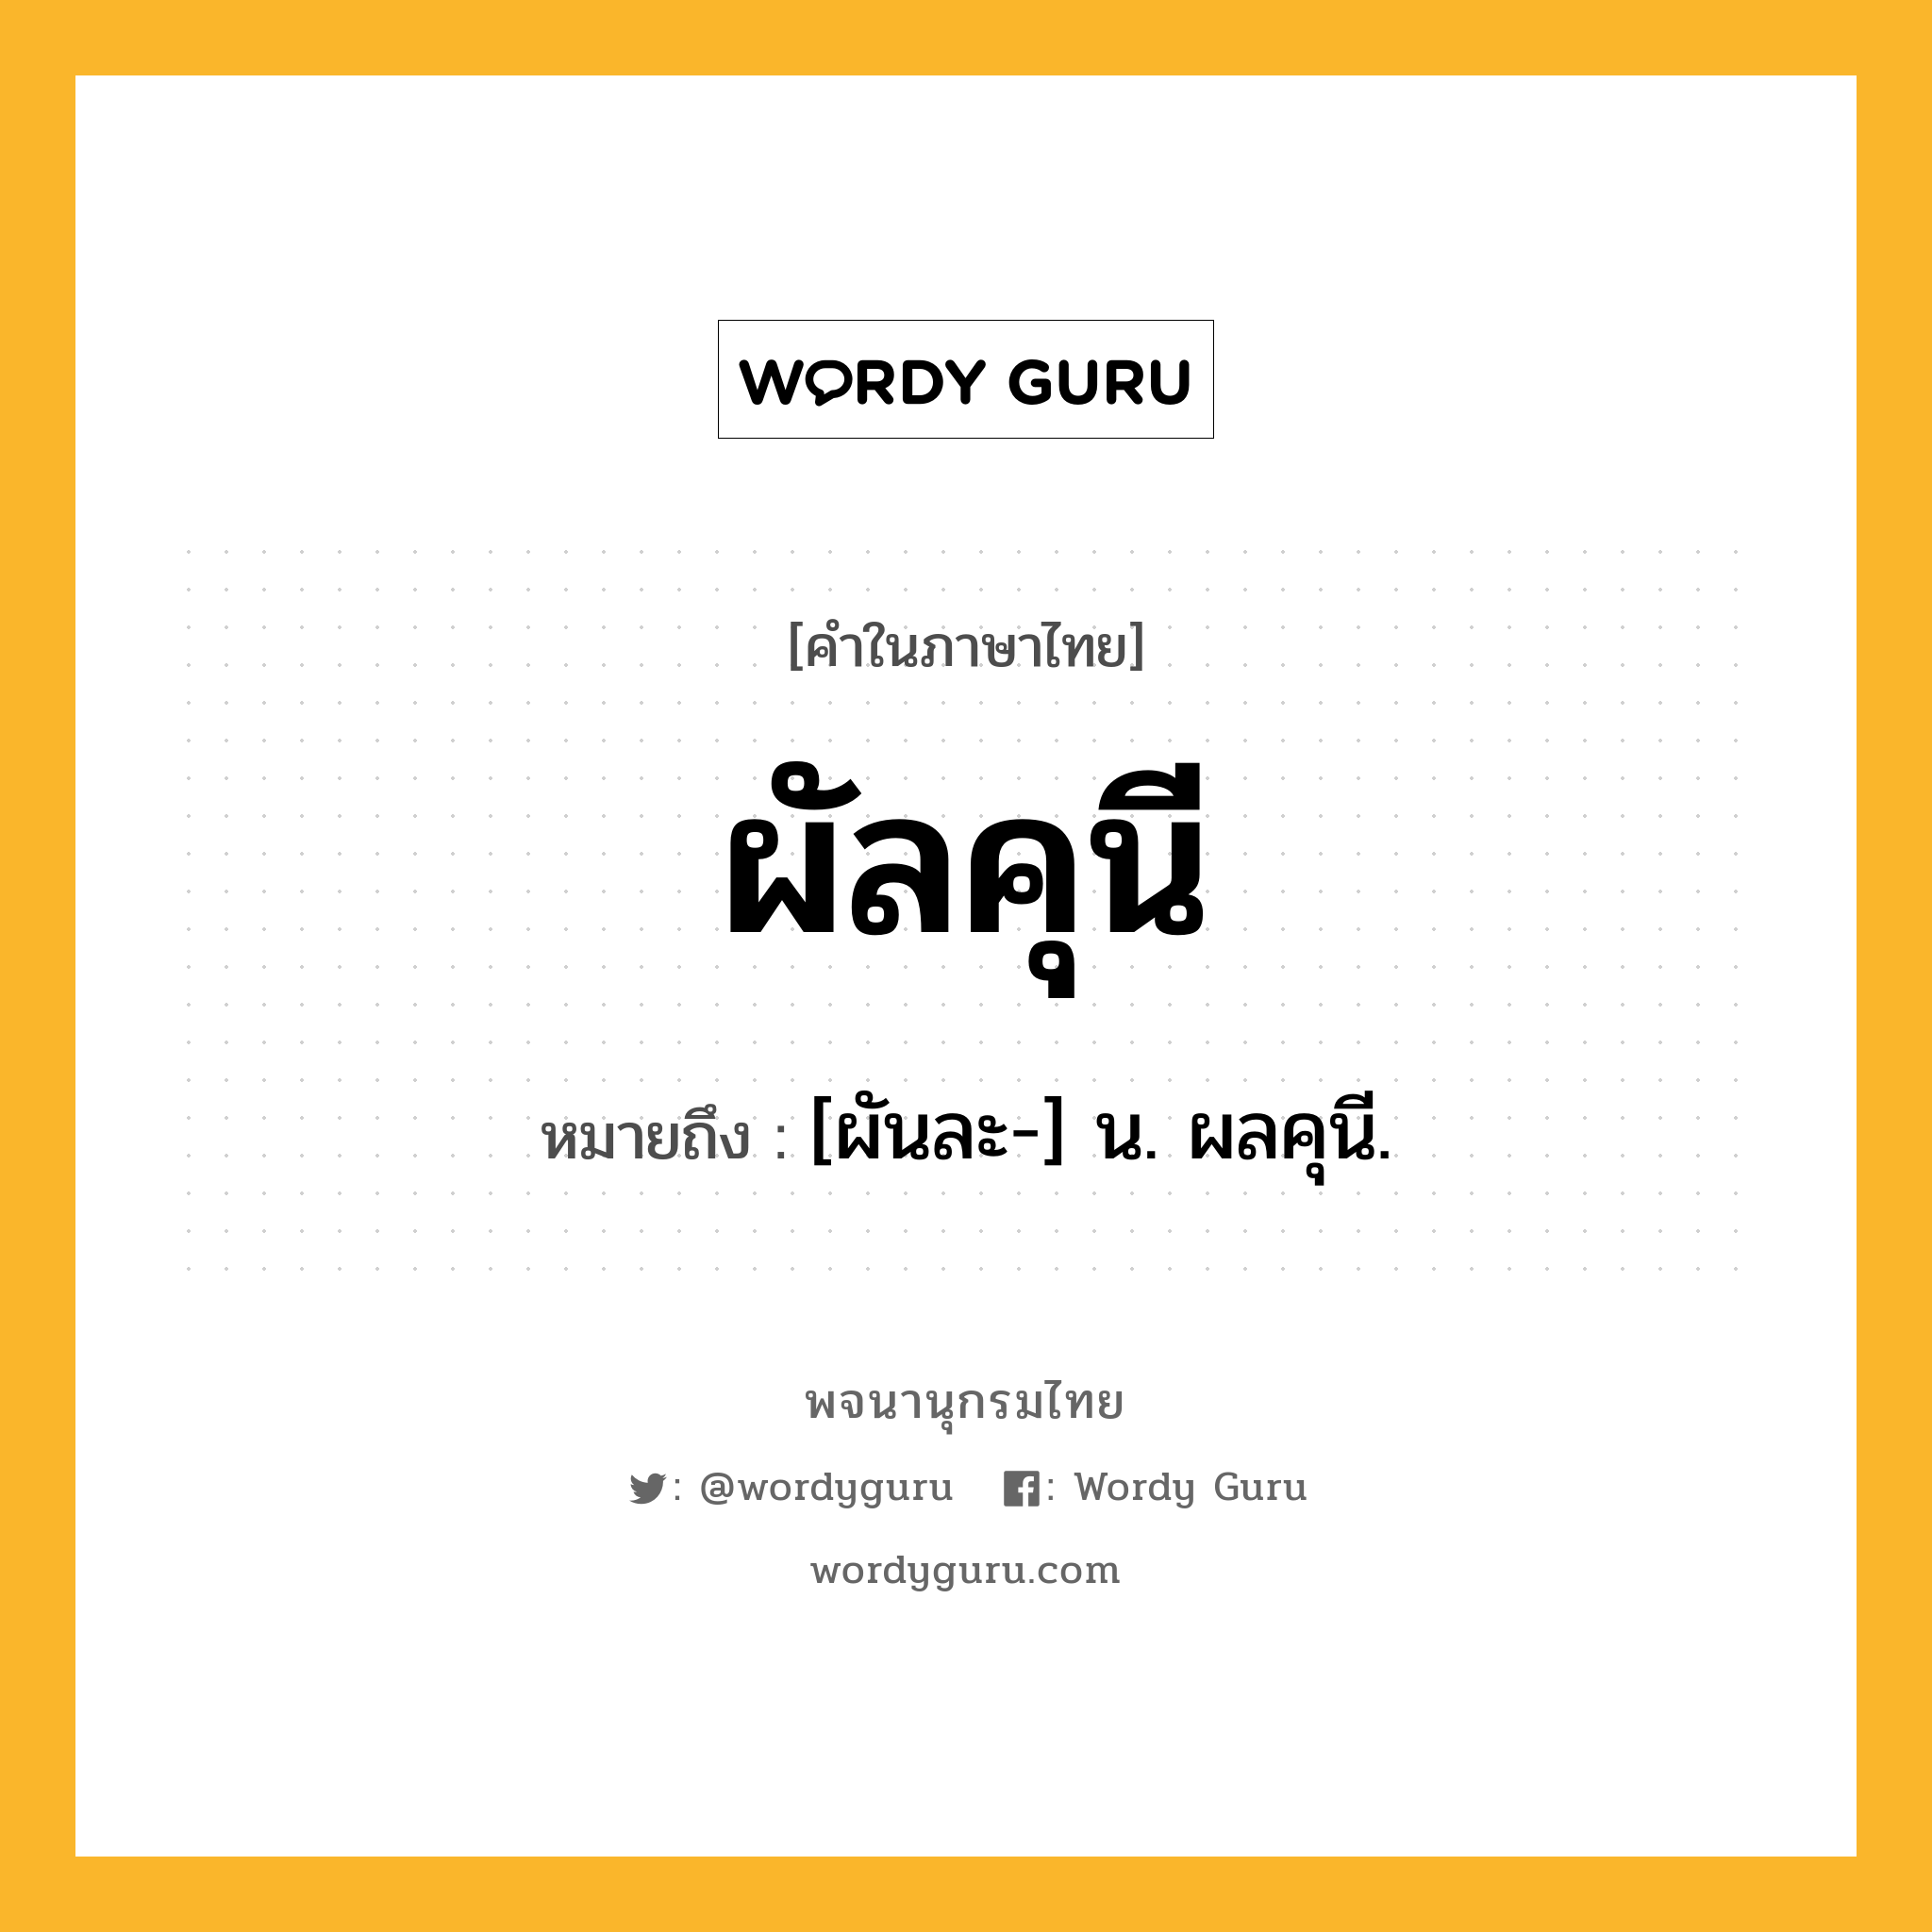 ผัลคุนี ความหมาย หมายถึงอะไร?, คำในภาษาไทย ผัลคุนี หมายถึง [ผันละ-] น. ผลคุนี.